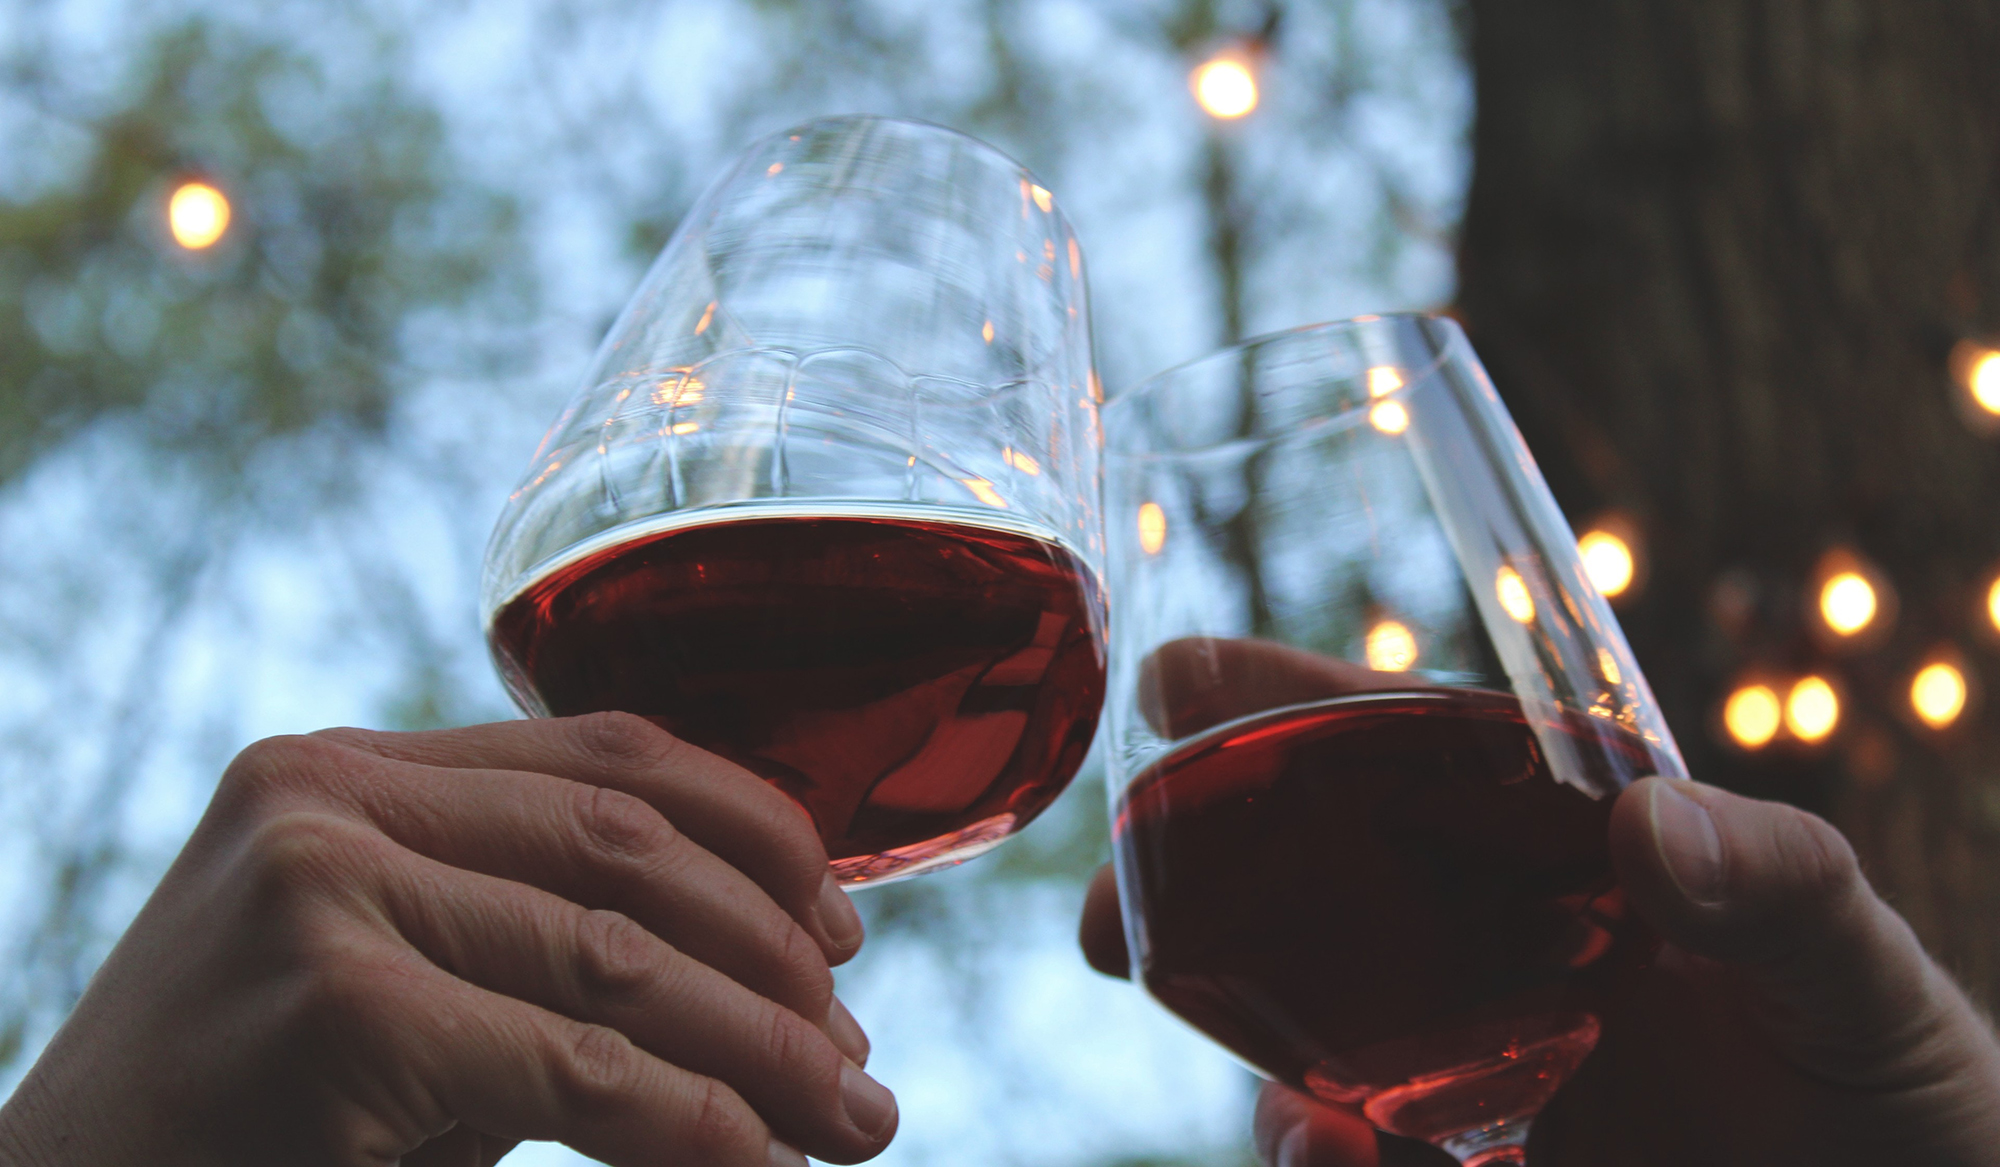 La ciencia explica los dolores de cabeza tras beber vino tinto